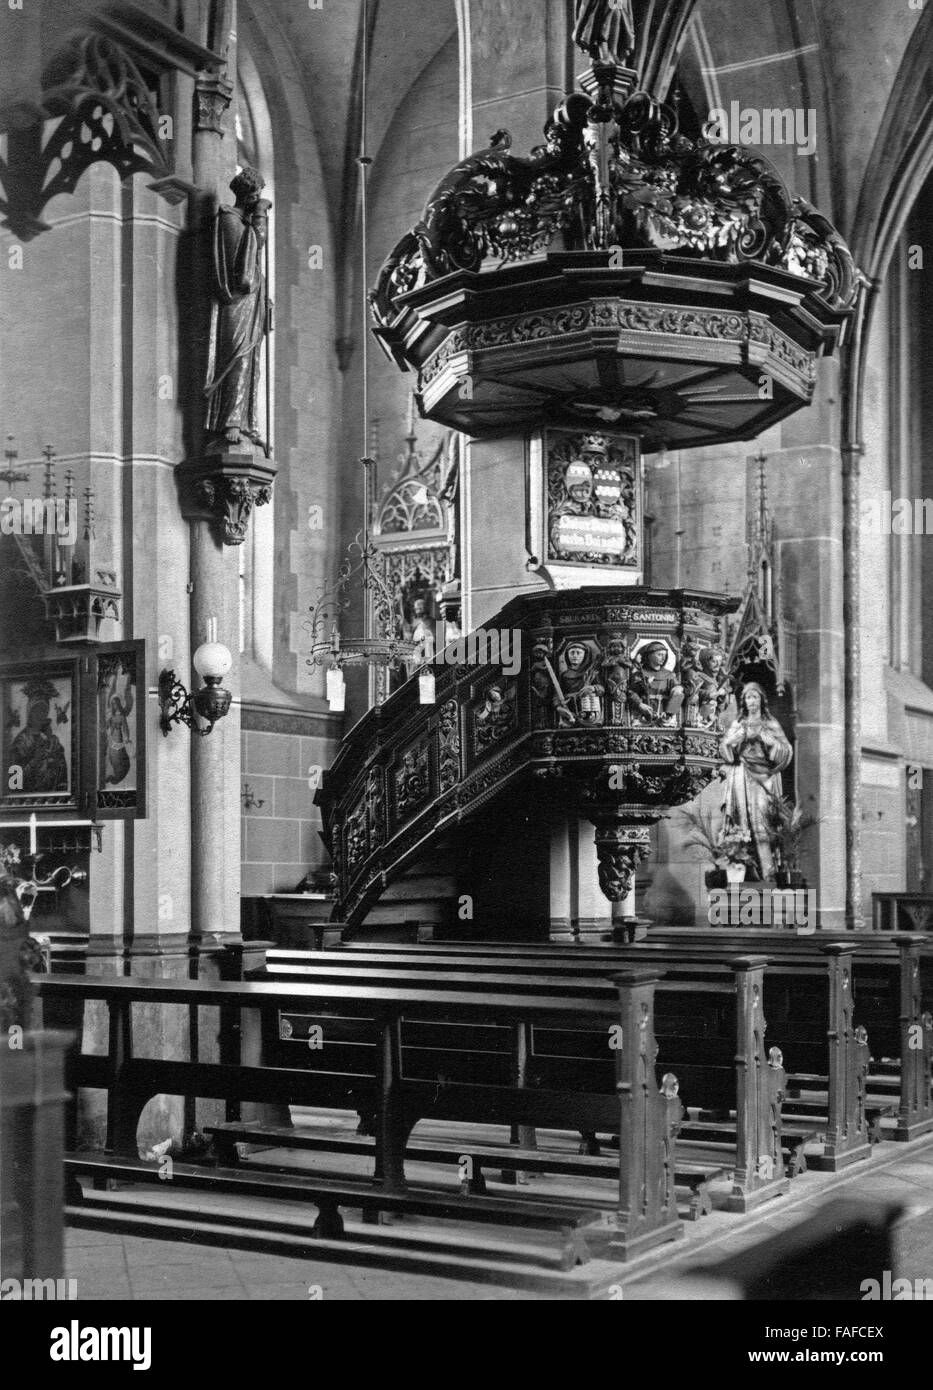 Im Inneren der San Pankratius Kirche in Paffendorf bei Bergheim, Deutschland 1920er Jahre. All'interno di San Pankratius chiesa a Paffendorf vicino a Bergheim, Germania 1920s. Foto Stock